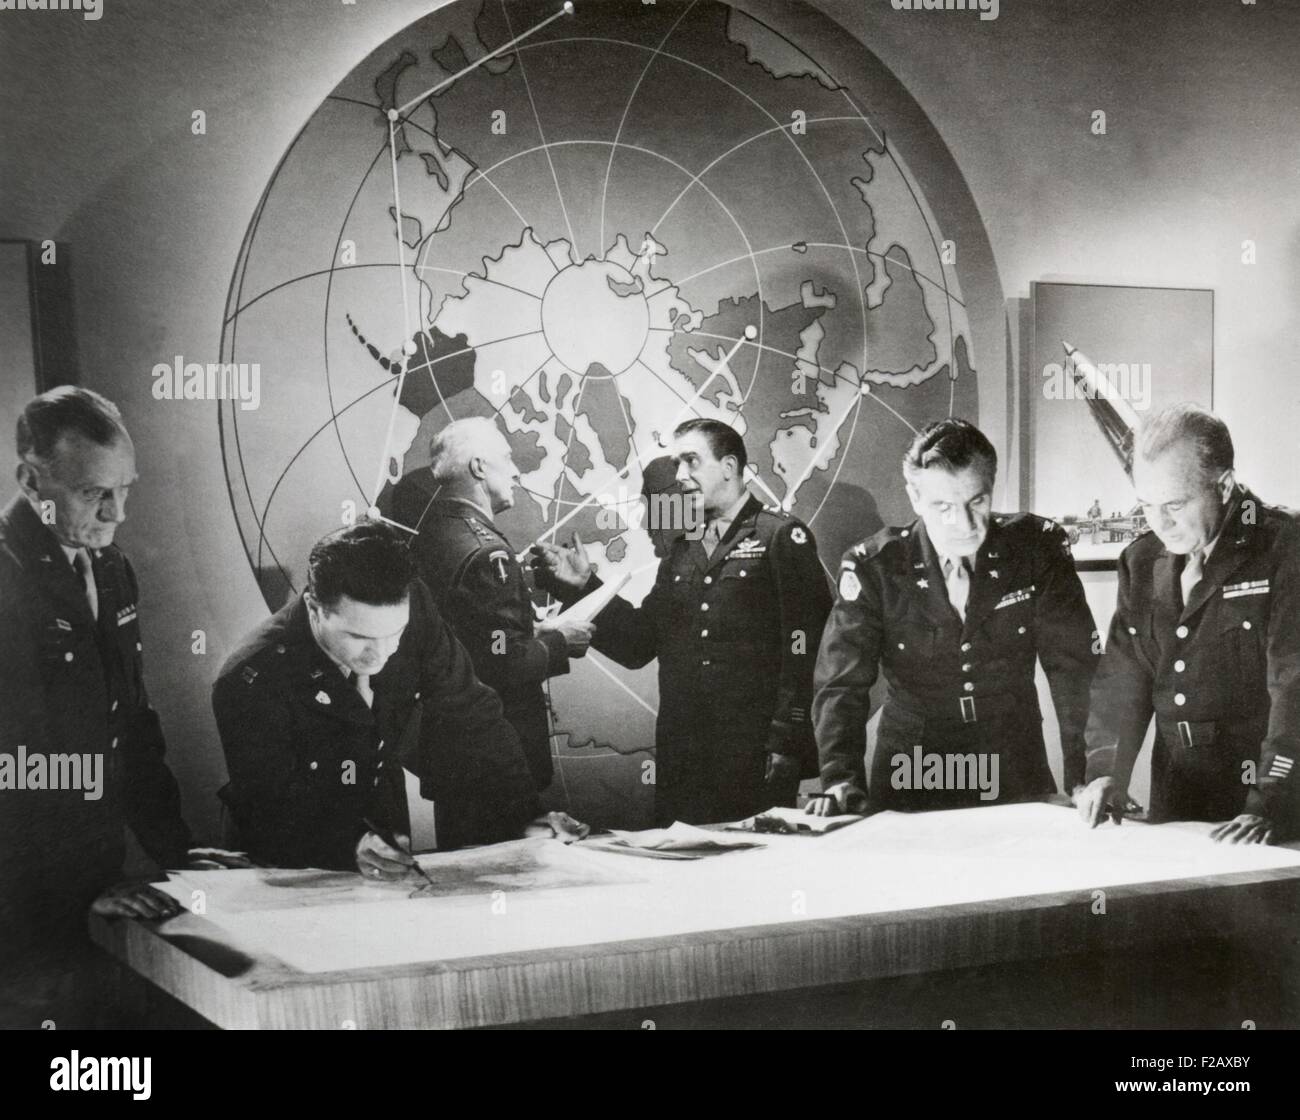 Encore un film de l'armée américaine film sur une attaque hypothétique à l'aide d'une bombe atomique, novembre 1948. Scène de généraux d'armée dans une guerre nucléaire. (BSLOC 2015 2 32) Banque D'Images